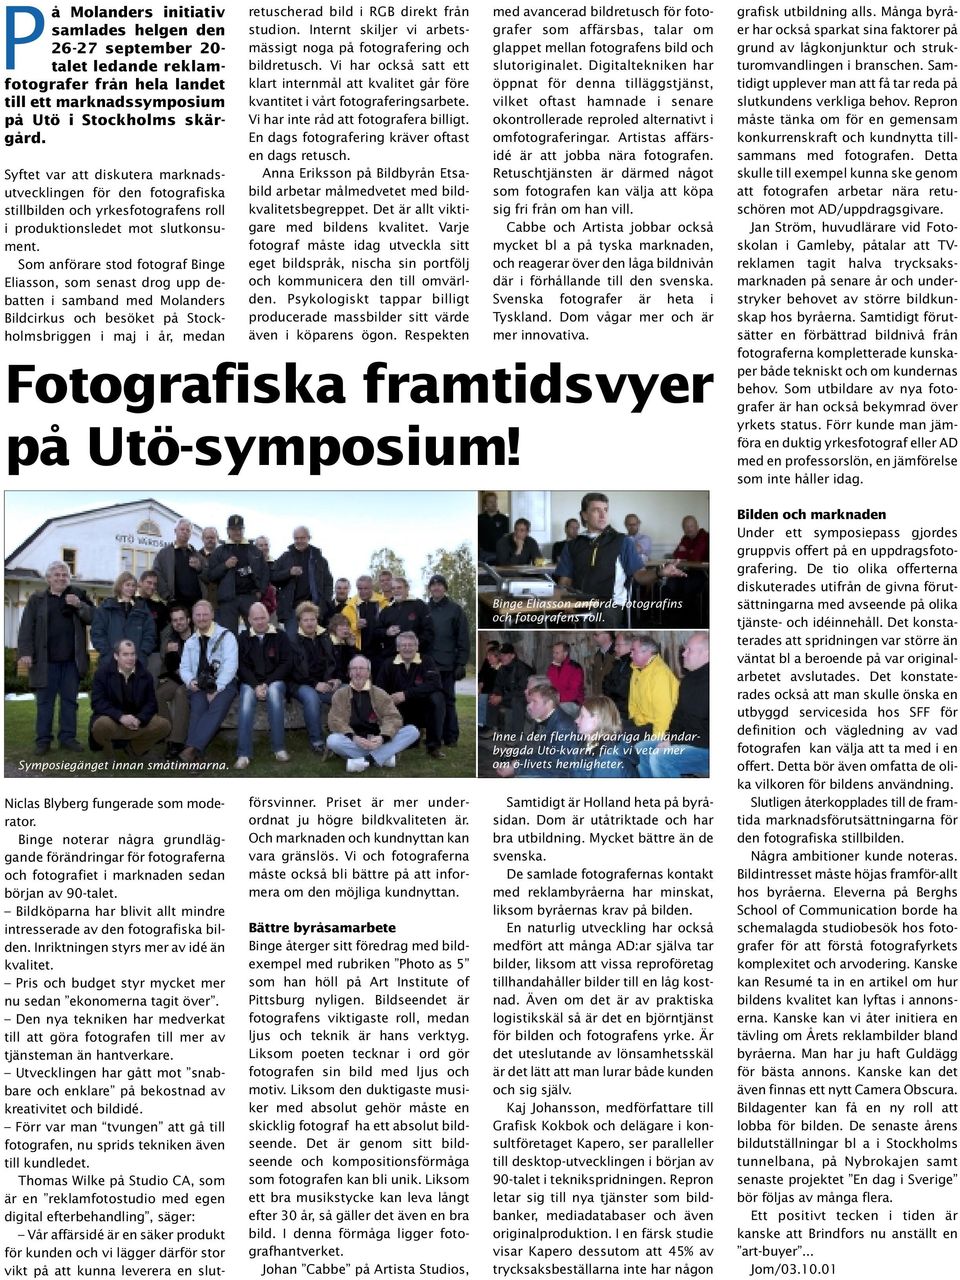 Som anförare stod fotograf Binge Eliasson, som senast drog upp debatten i samband med Molanders Bildcirkus och besöket på Stockholmsbriggen i maj i år, medan retuscherad bild i RGB direkt från